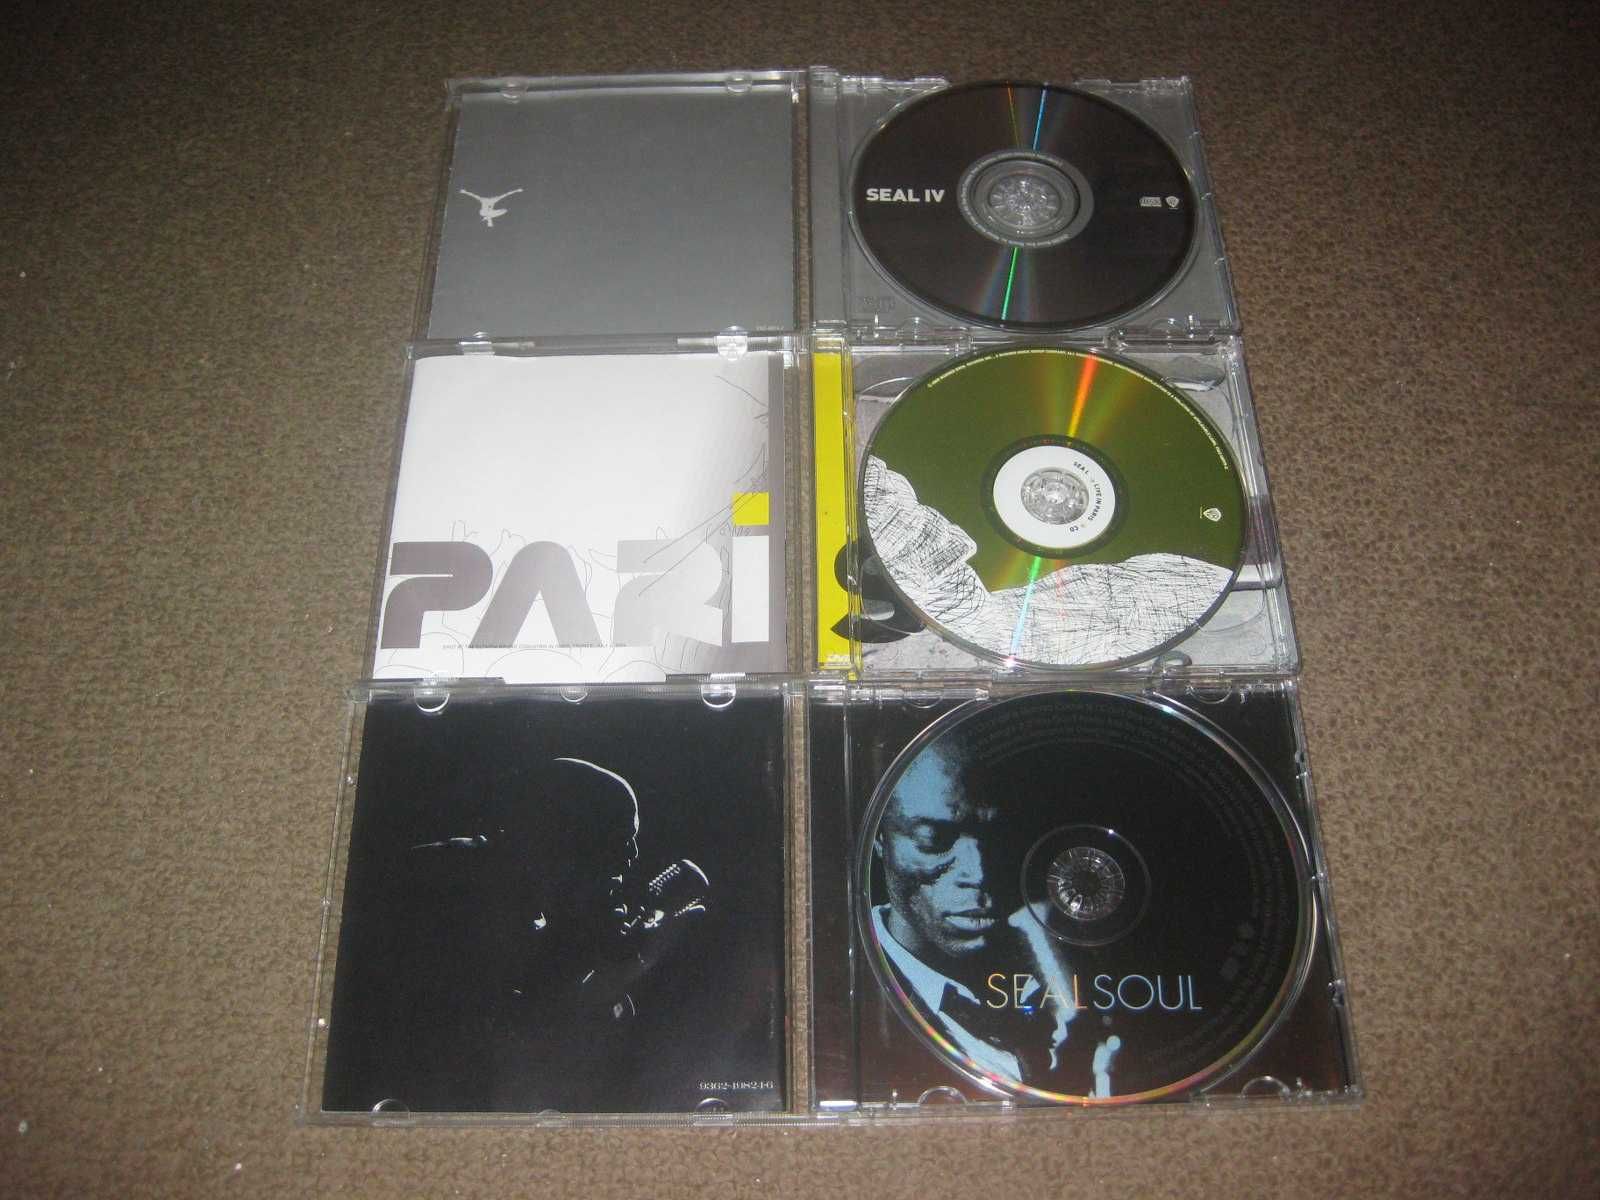 6 CDs do "Seal" Portes Grátis!